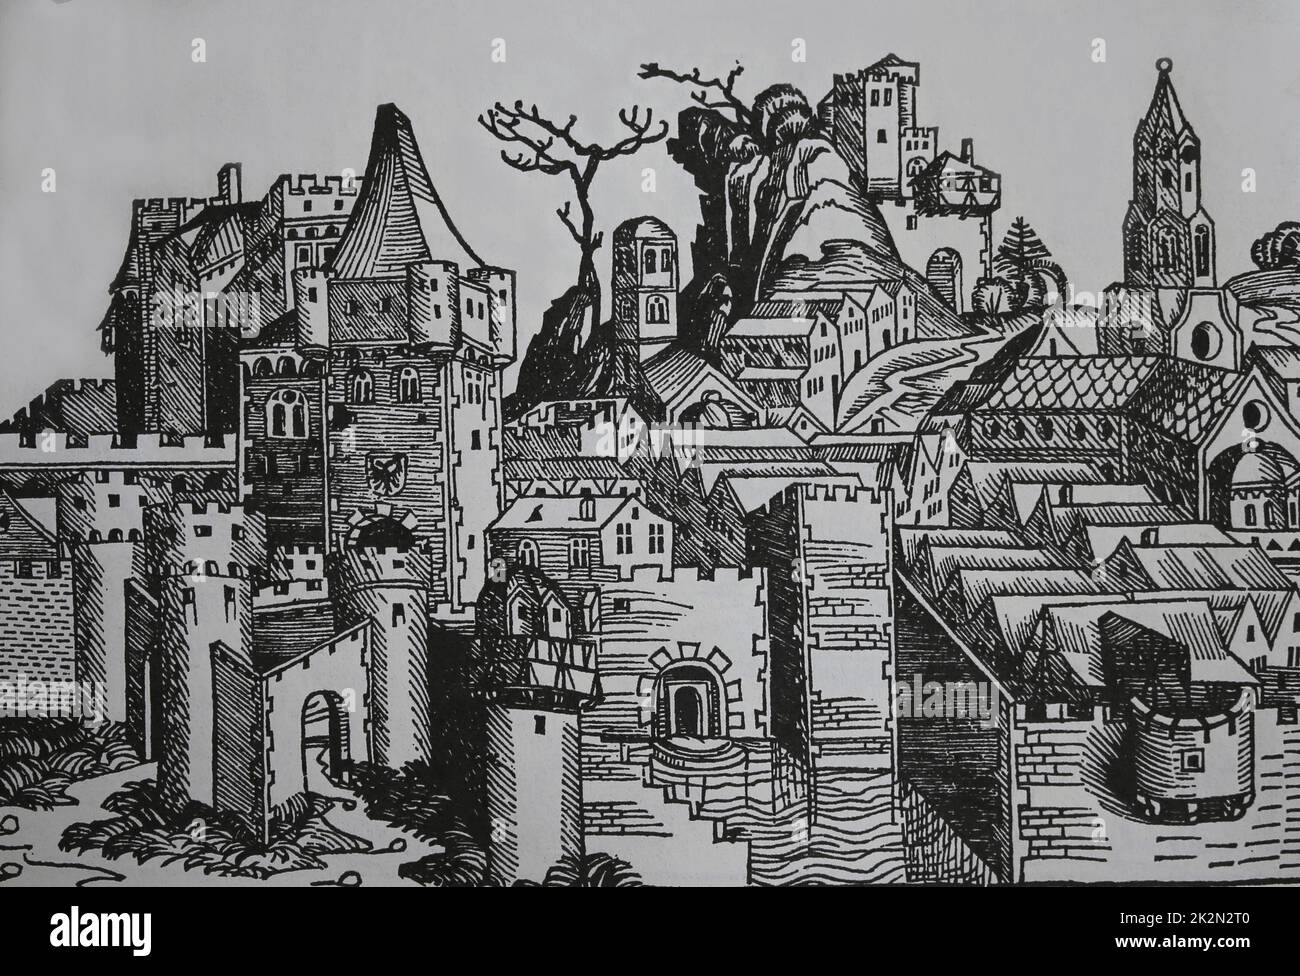 Ginebra. Grabado. La Crónica de Nuremberg. siglo 15th. Foto de stock